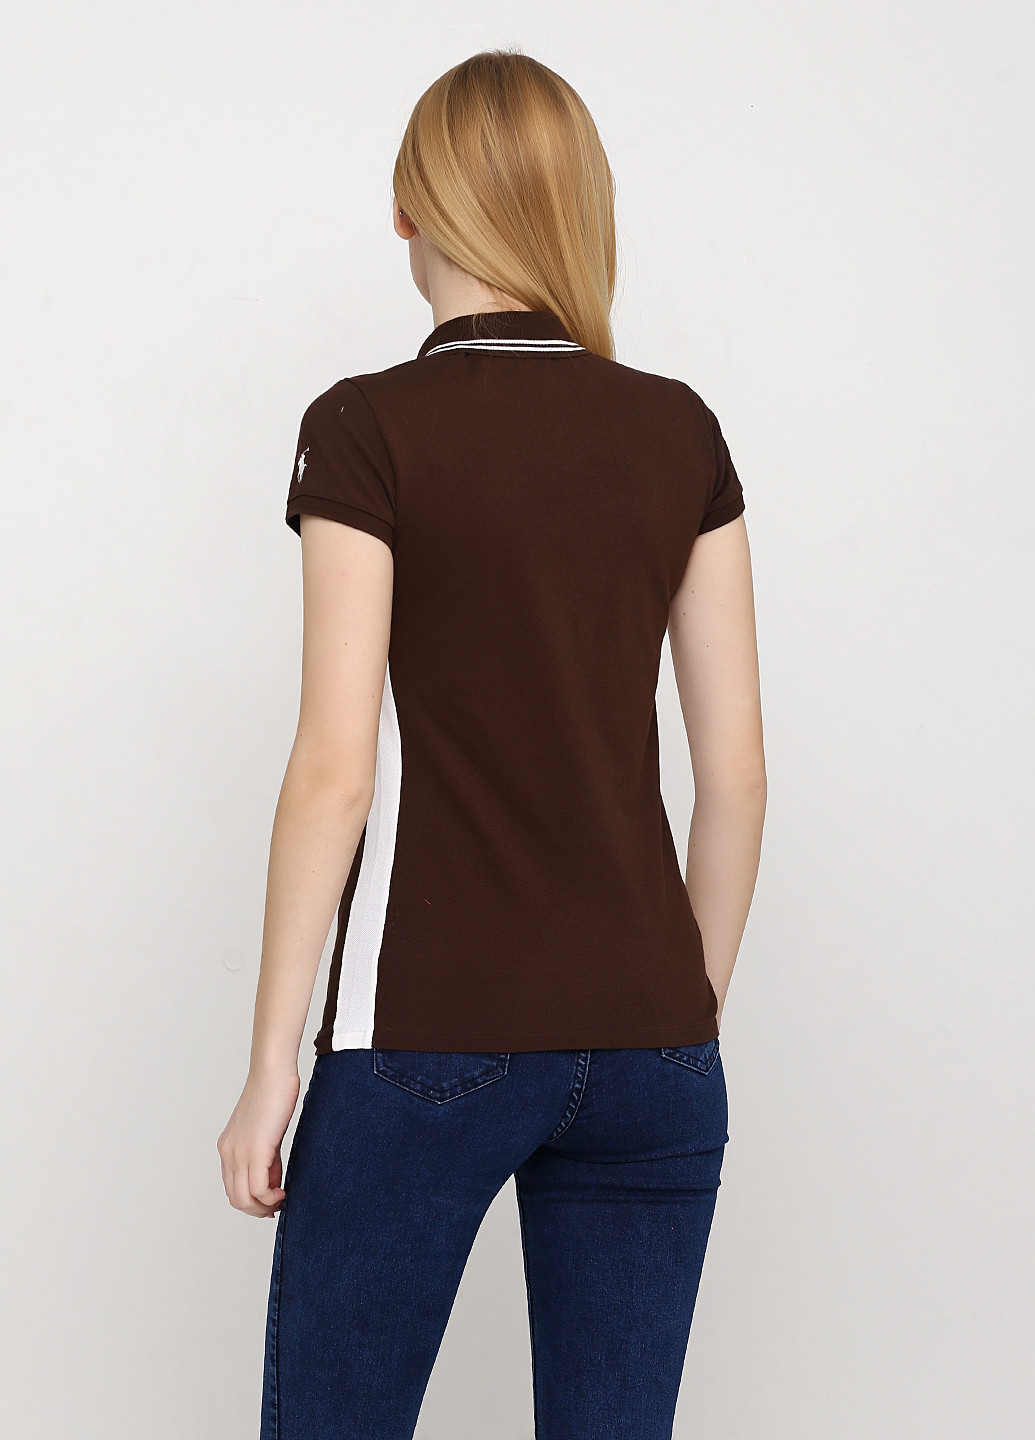 Коричневая женская футболка-поло Ralph Lauren с логотипом